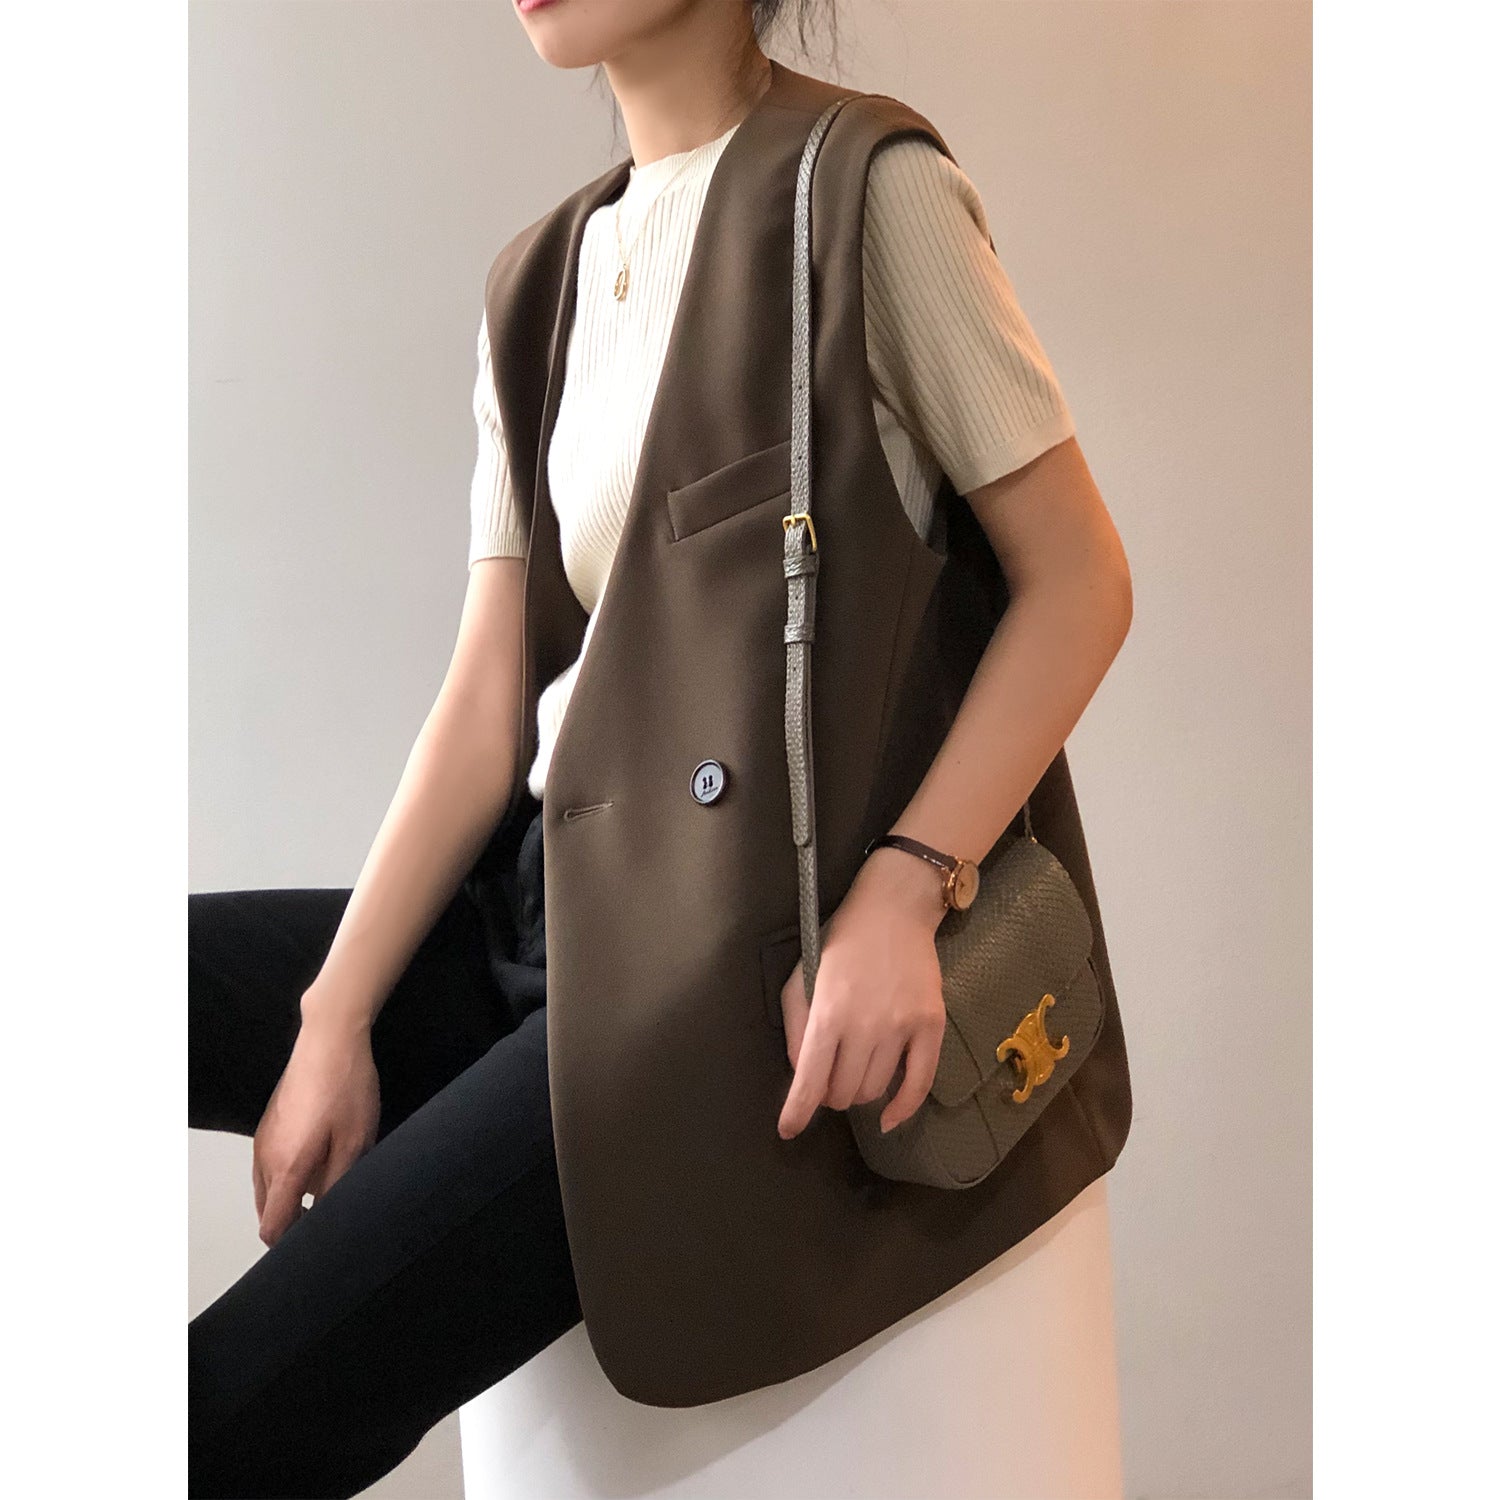 Vest for Women Autumn Korean Loose Mid Length Sleeveless Vest Celebrity Vest